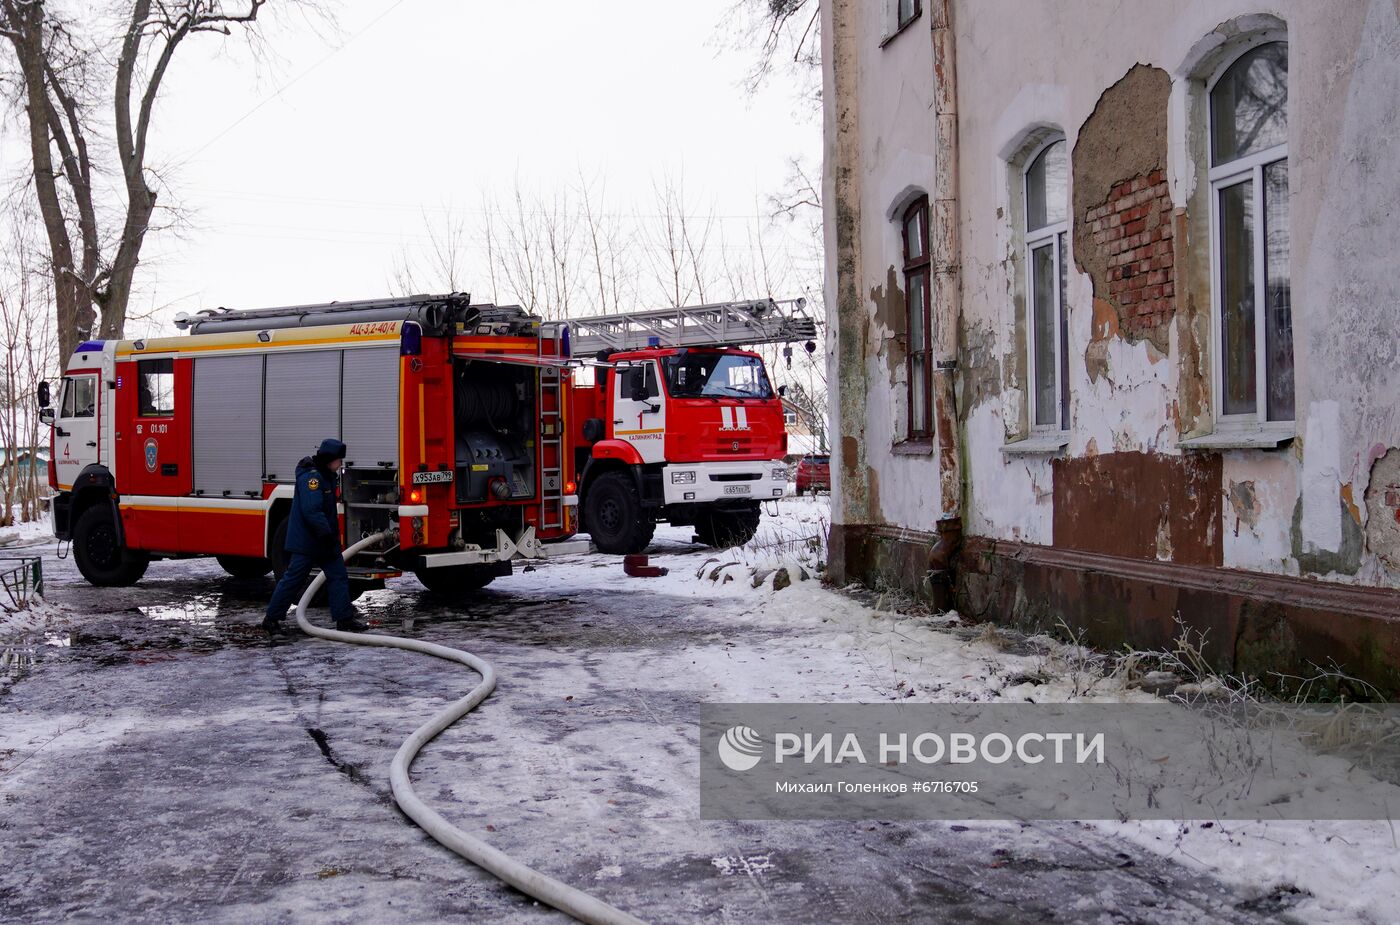 Пожар в историческом здании на территории Замка Вальдау под Калининградом